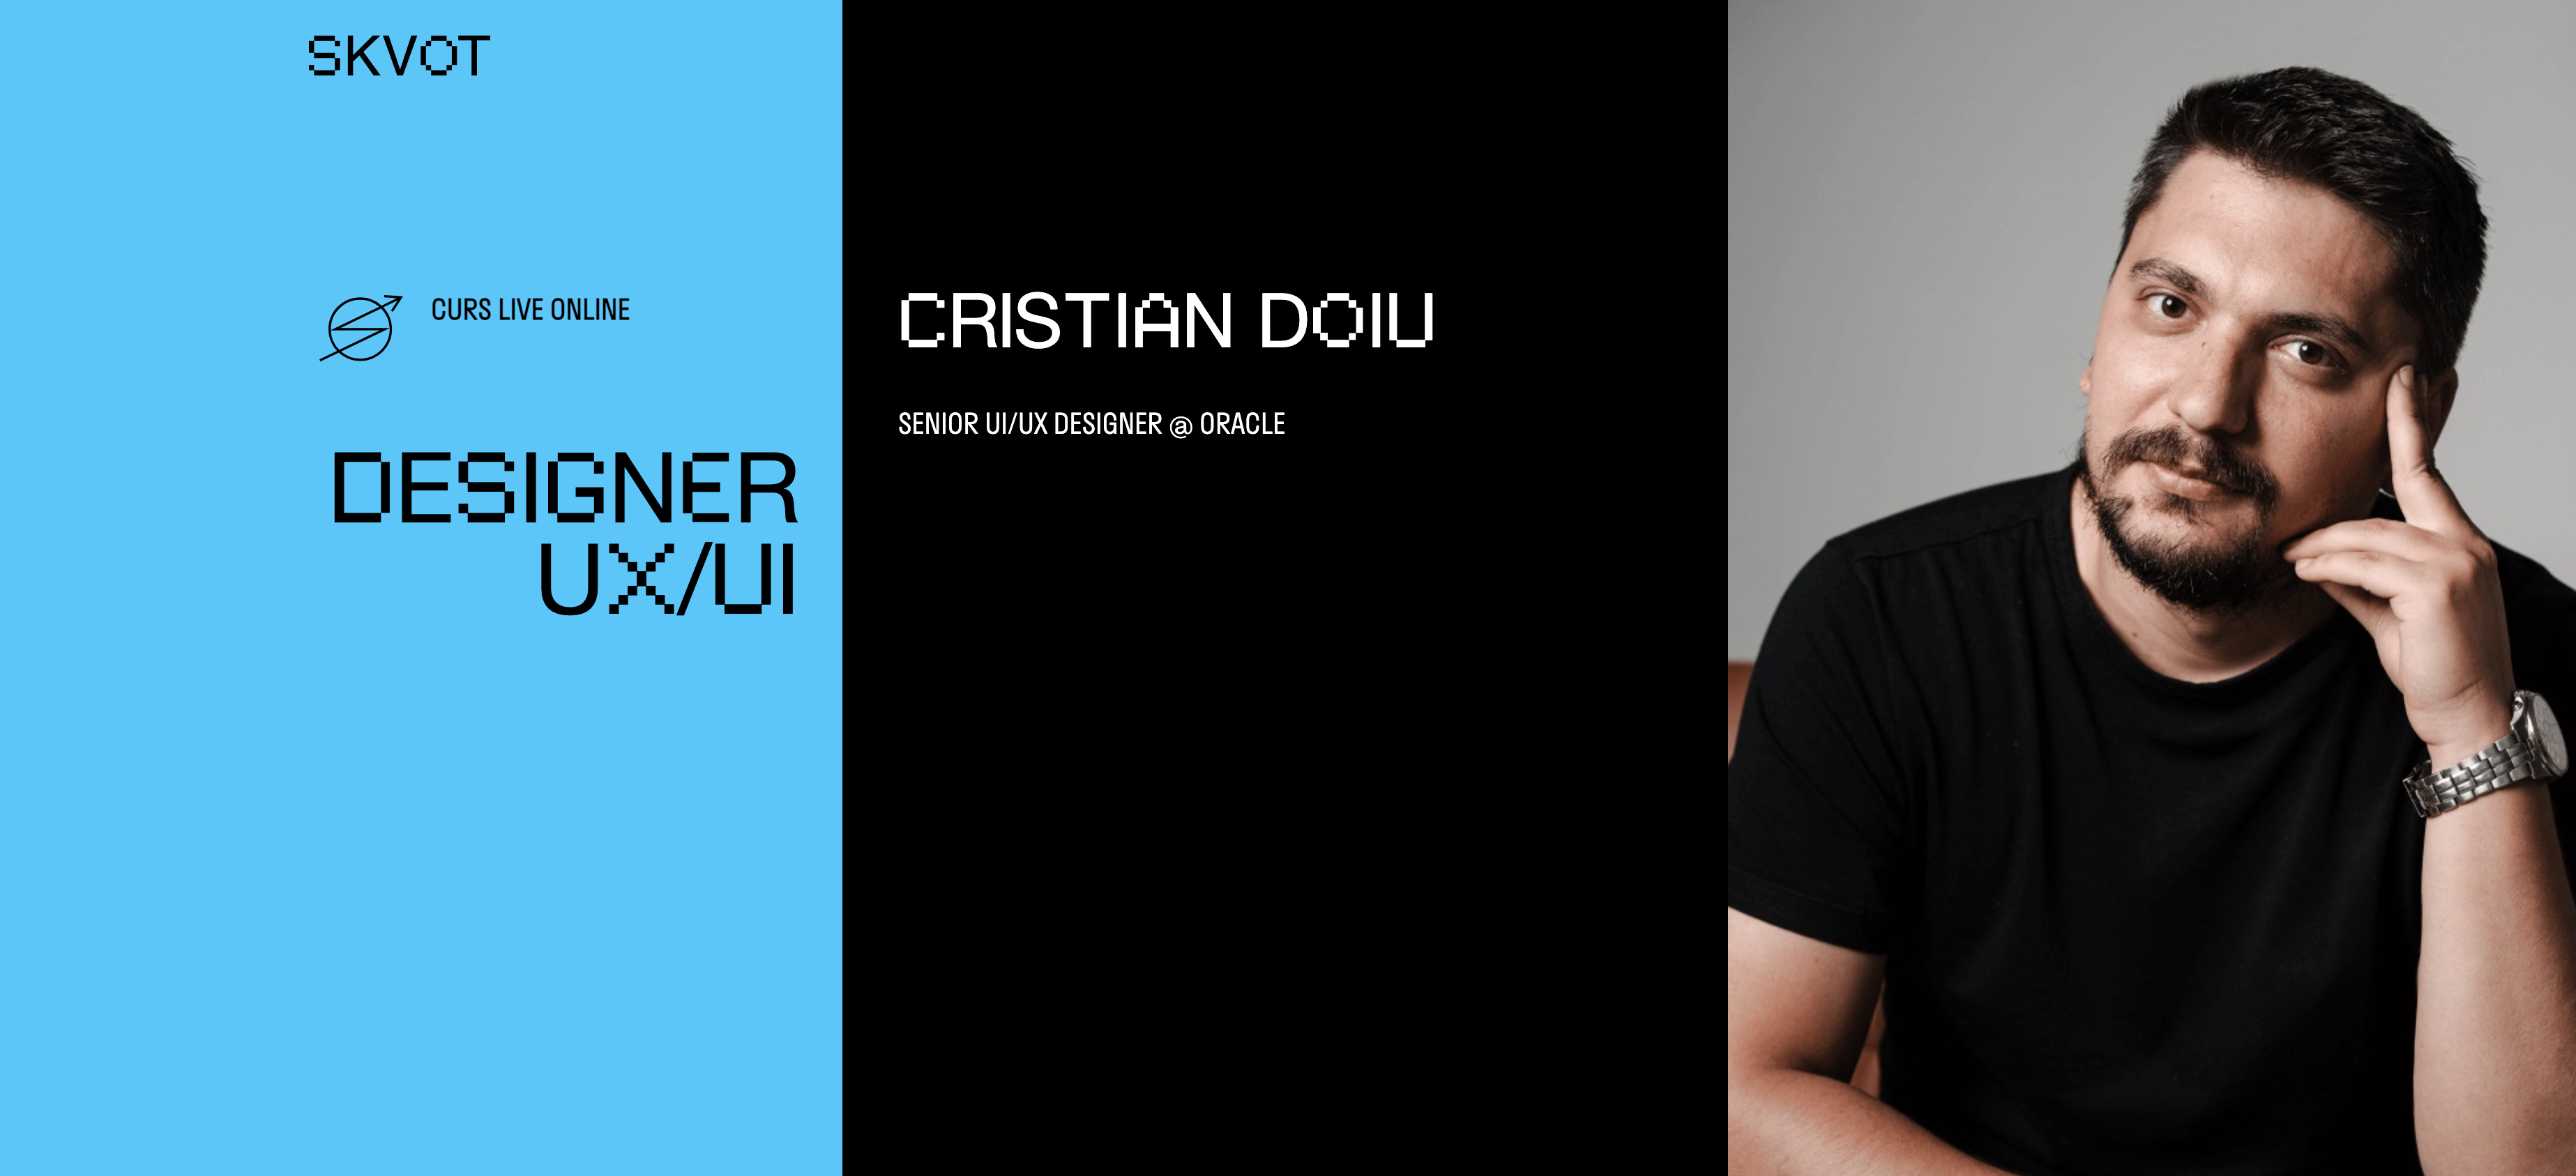 Curs Designer UX/UI